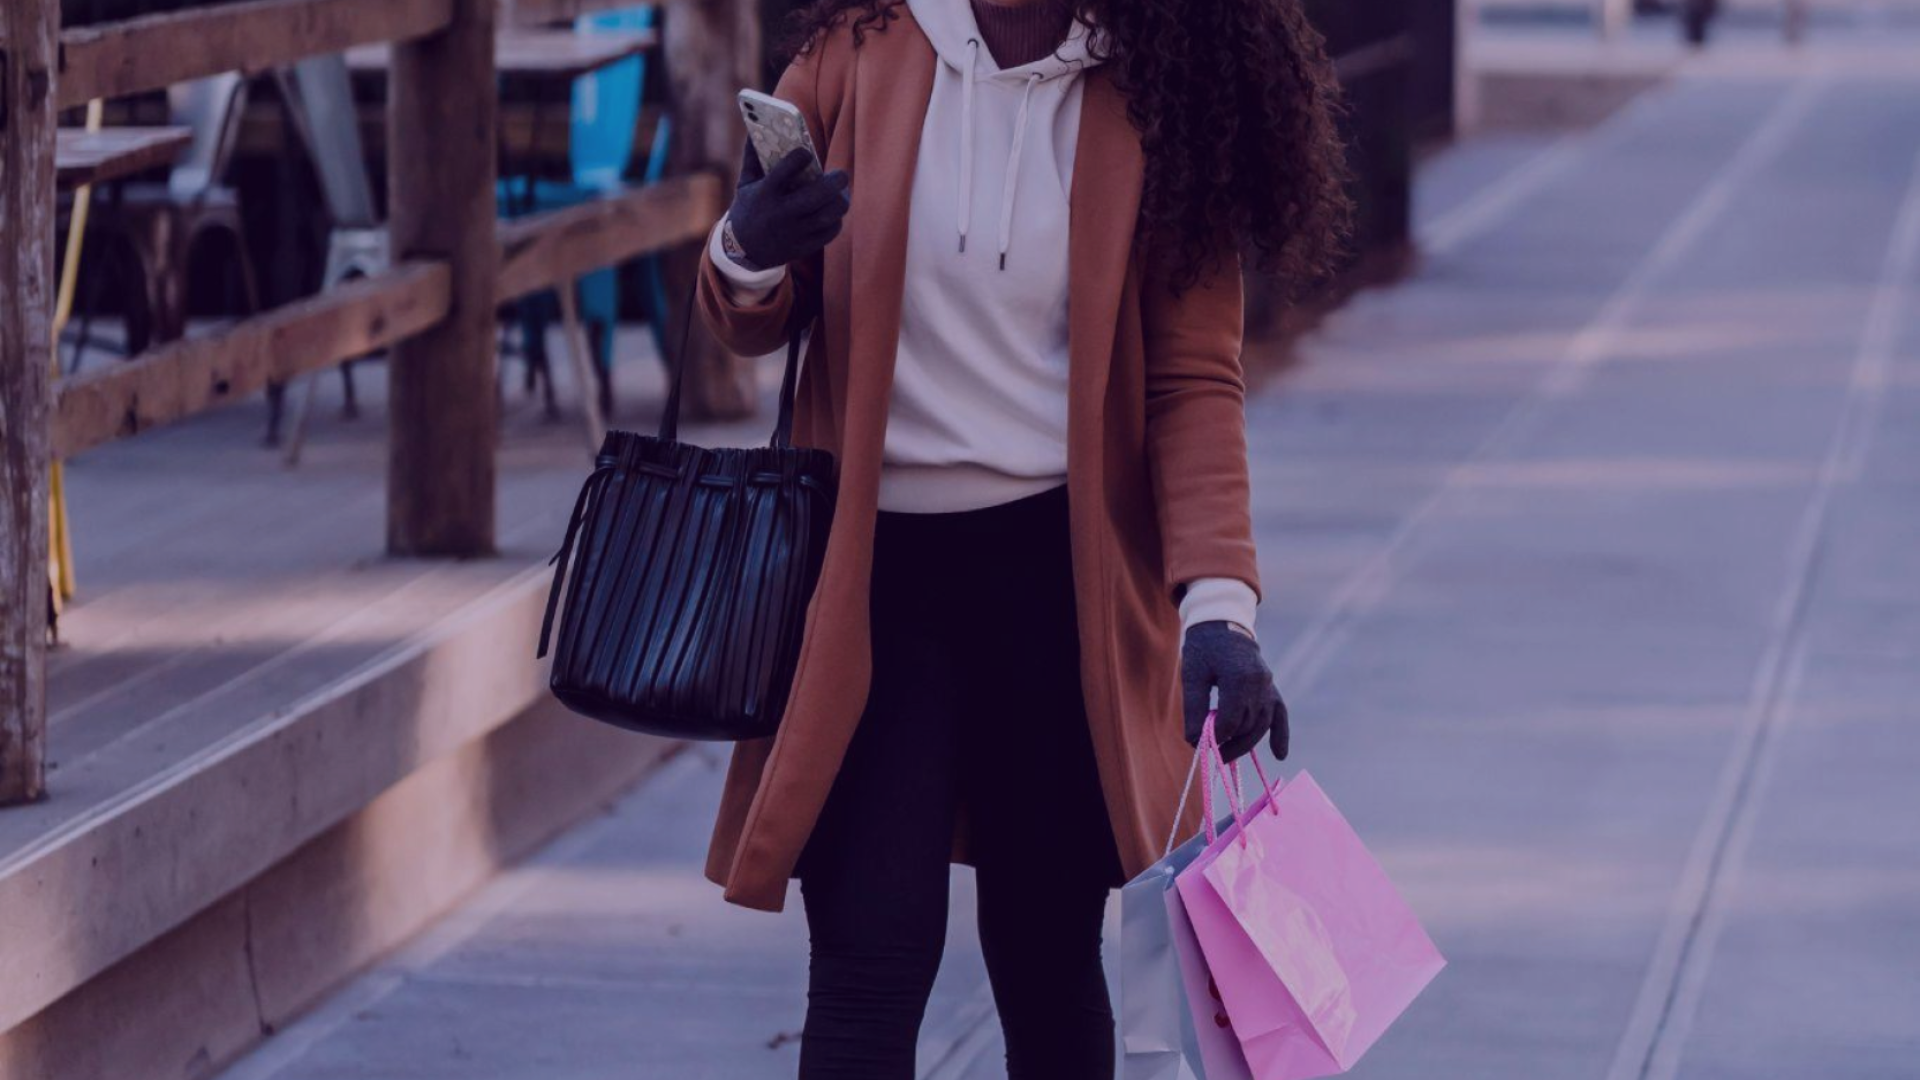 Foto de uma mulher com sacola de compras e um celular. A imagem transmite a ideia de compra local e incentiva o consumidor a buscar por lojas e serviços em sua região, por marketing local.